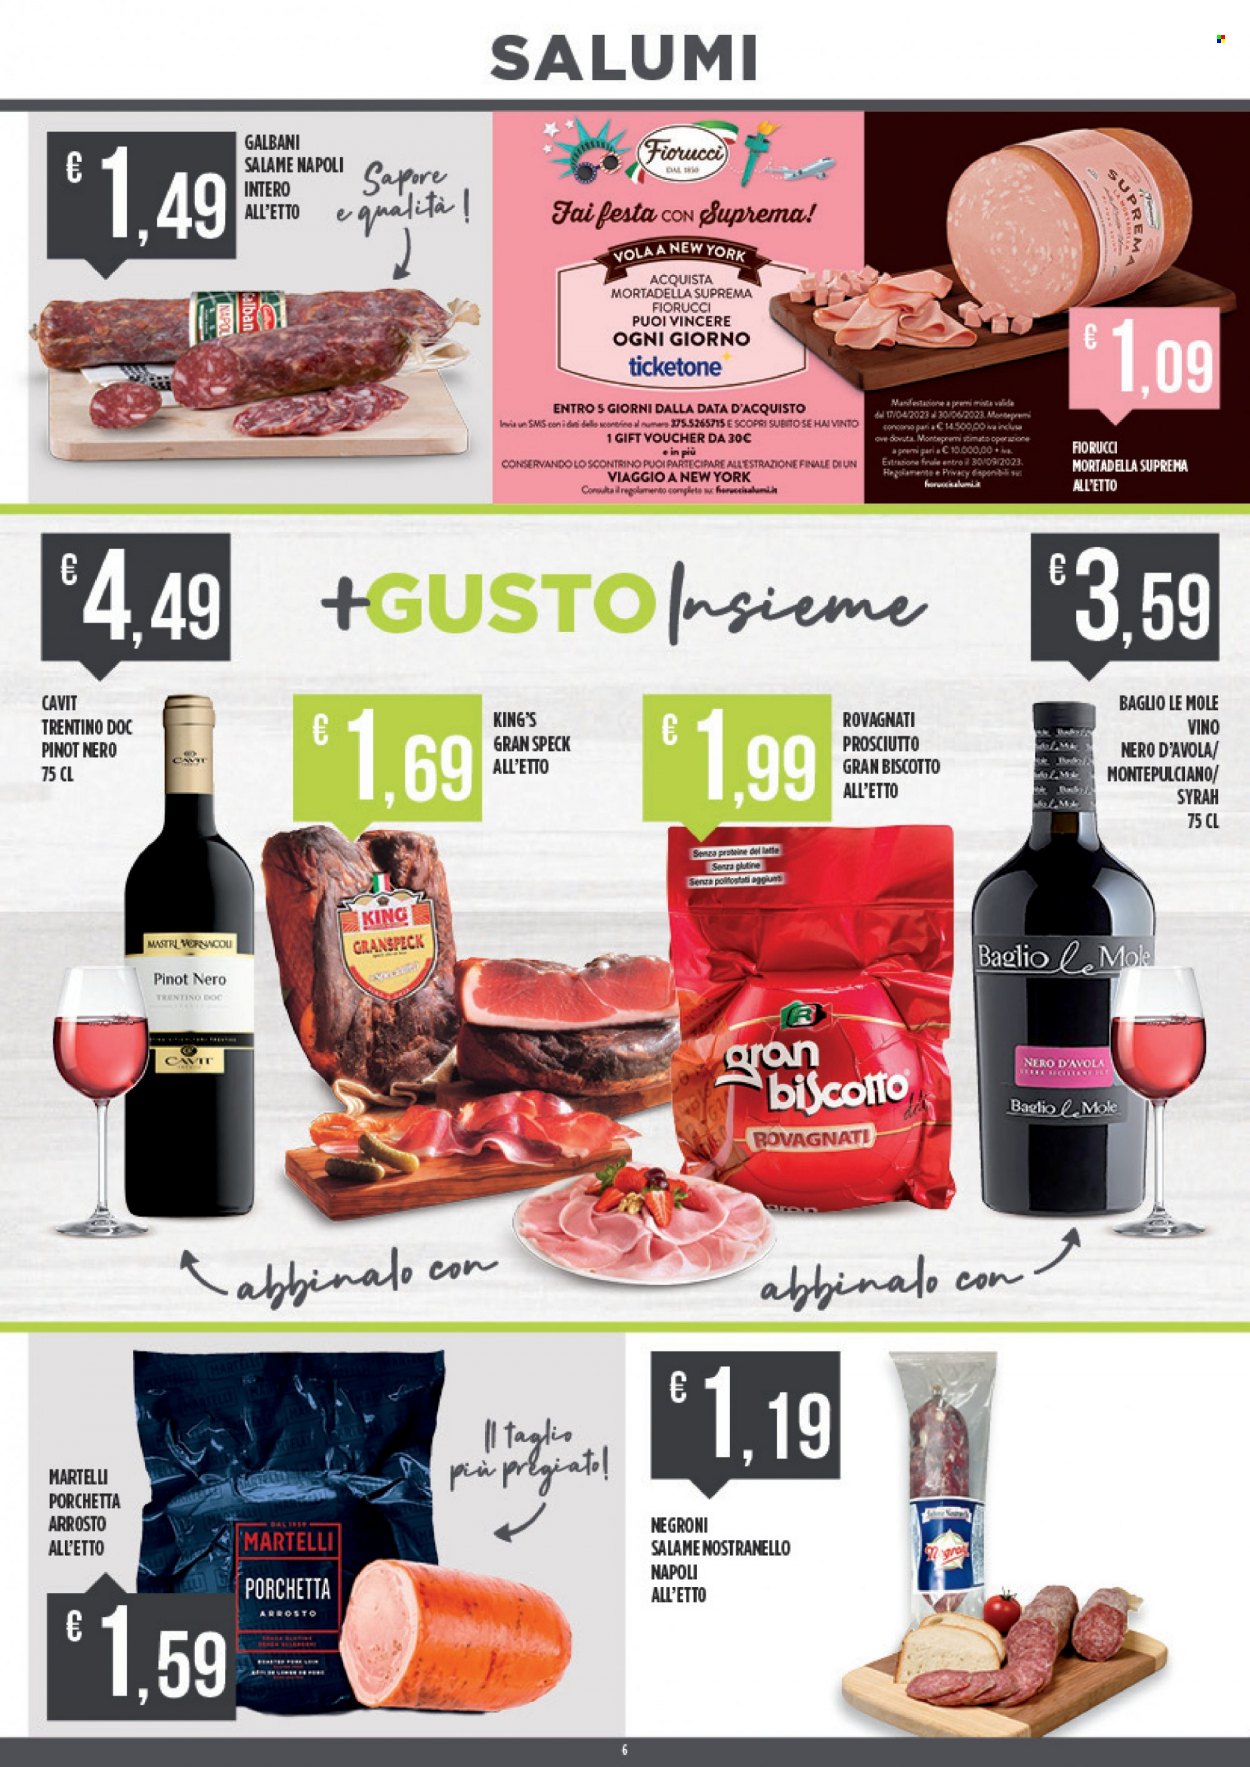 thumbnail - Volantino Euroesse - 22/5/2023 - 4/6/2023 - Prodotti in offerta - pere, Fiorucci, salame Napoli, speck, Galbani, mortadella, porchetta, Rovagnati, vino rosso, Pinot Nero, Nero d'Avola, vino. Pagina 6.